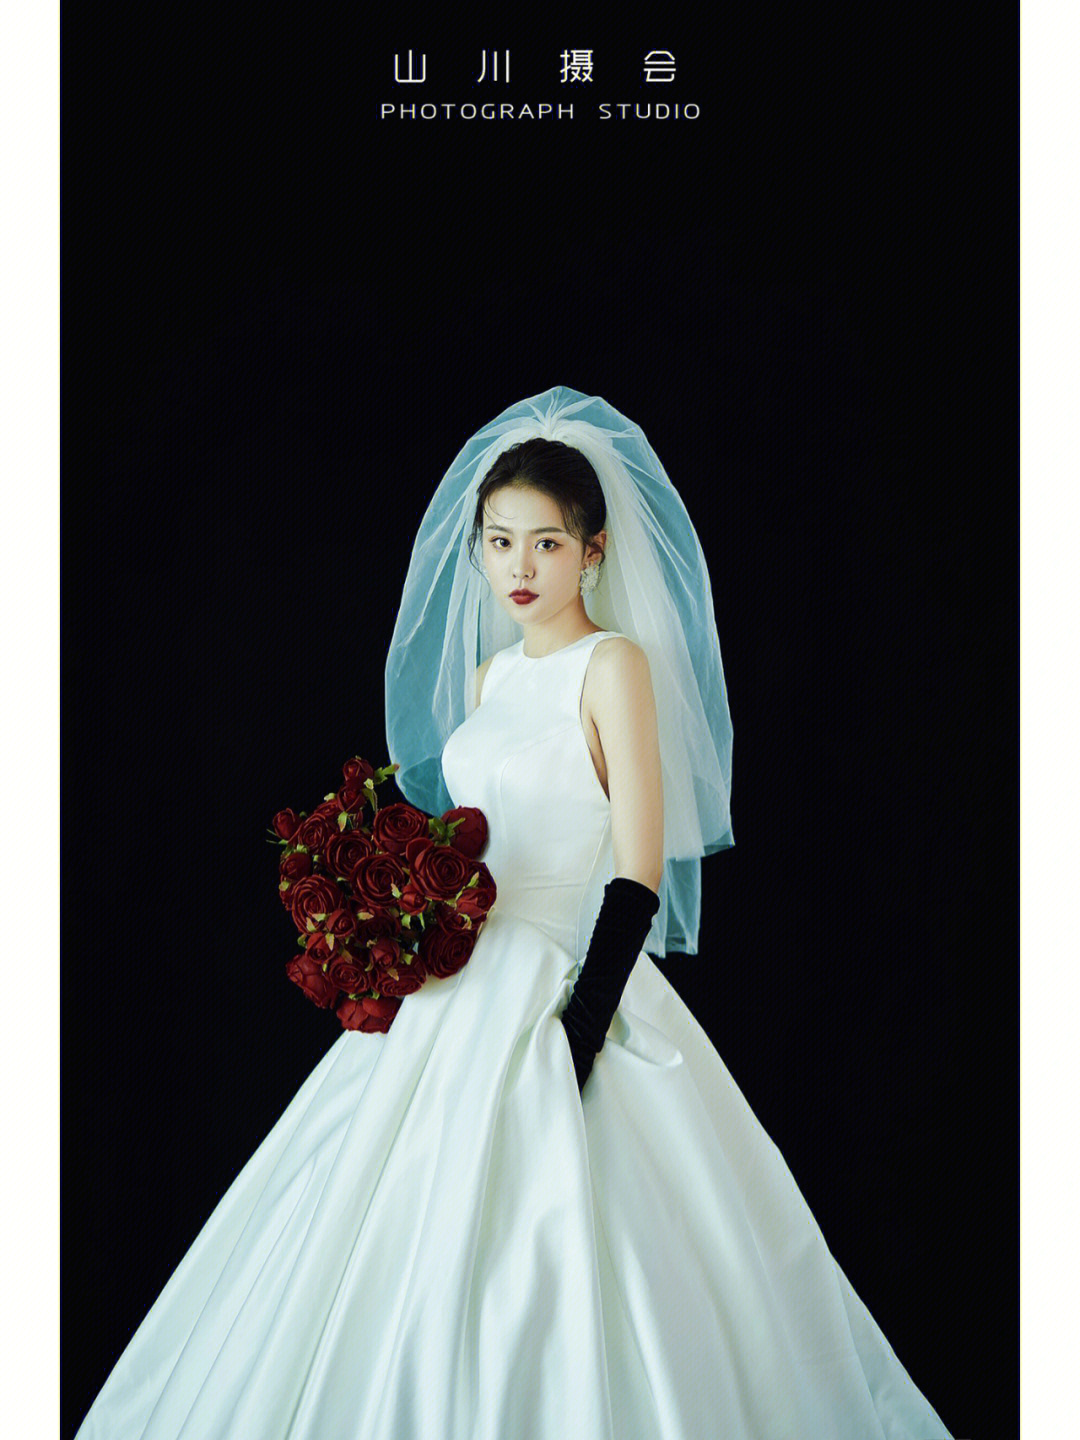 新娘单人照片徐州婚纱照